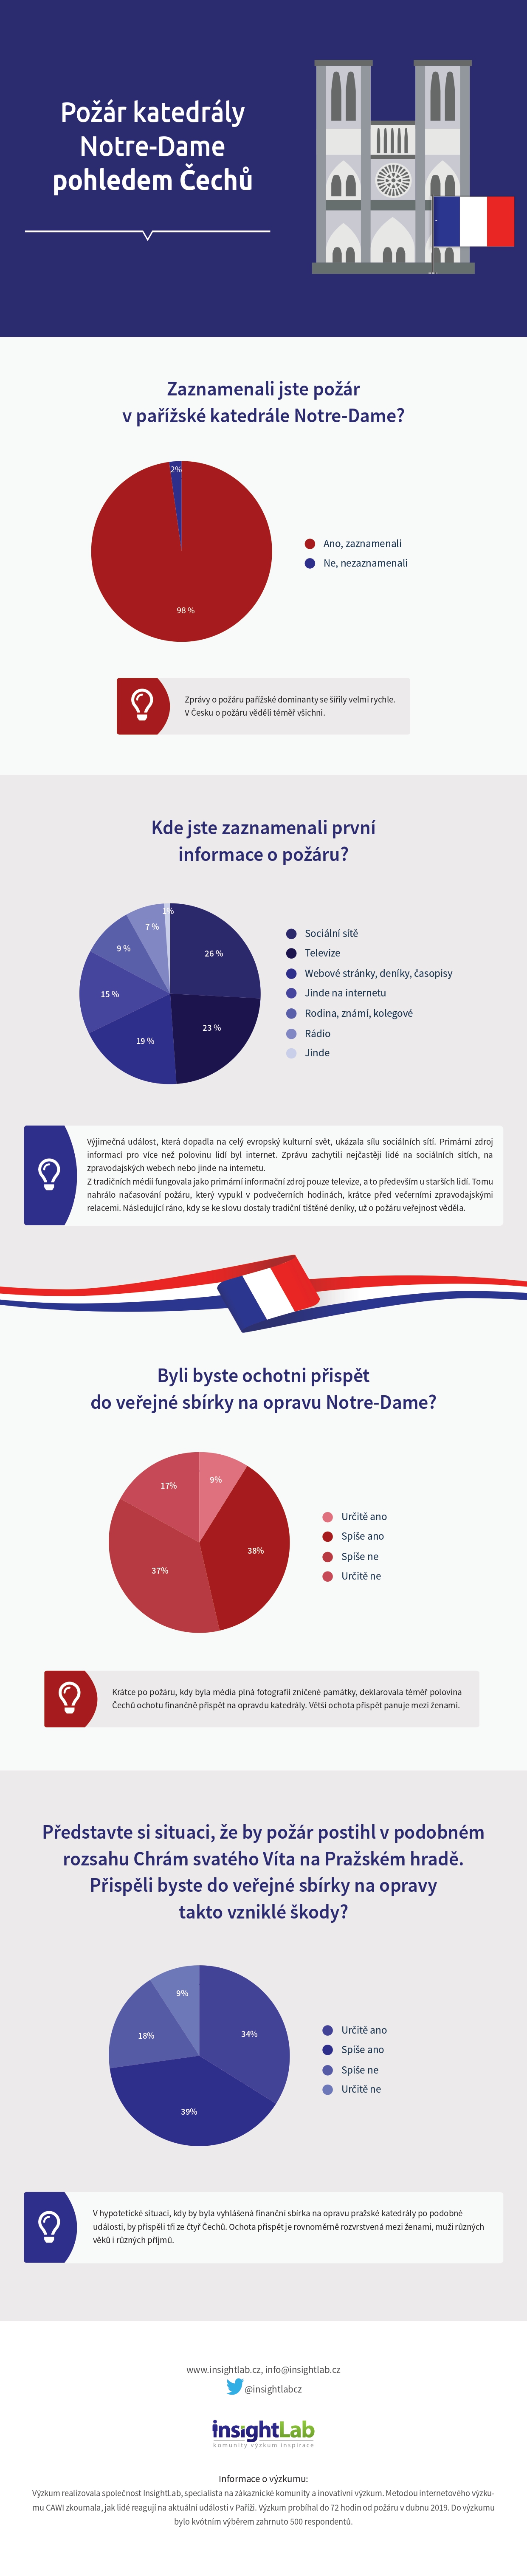 Požár v katedrále Notre-Dame českým pohledem - infografika